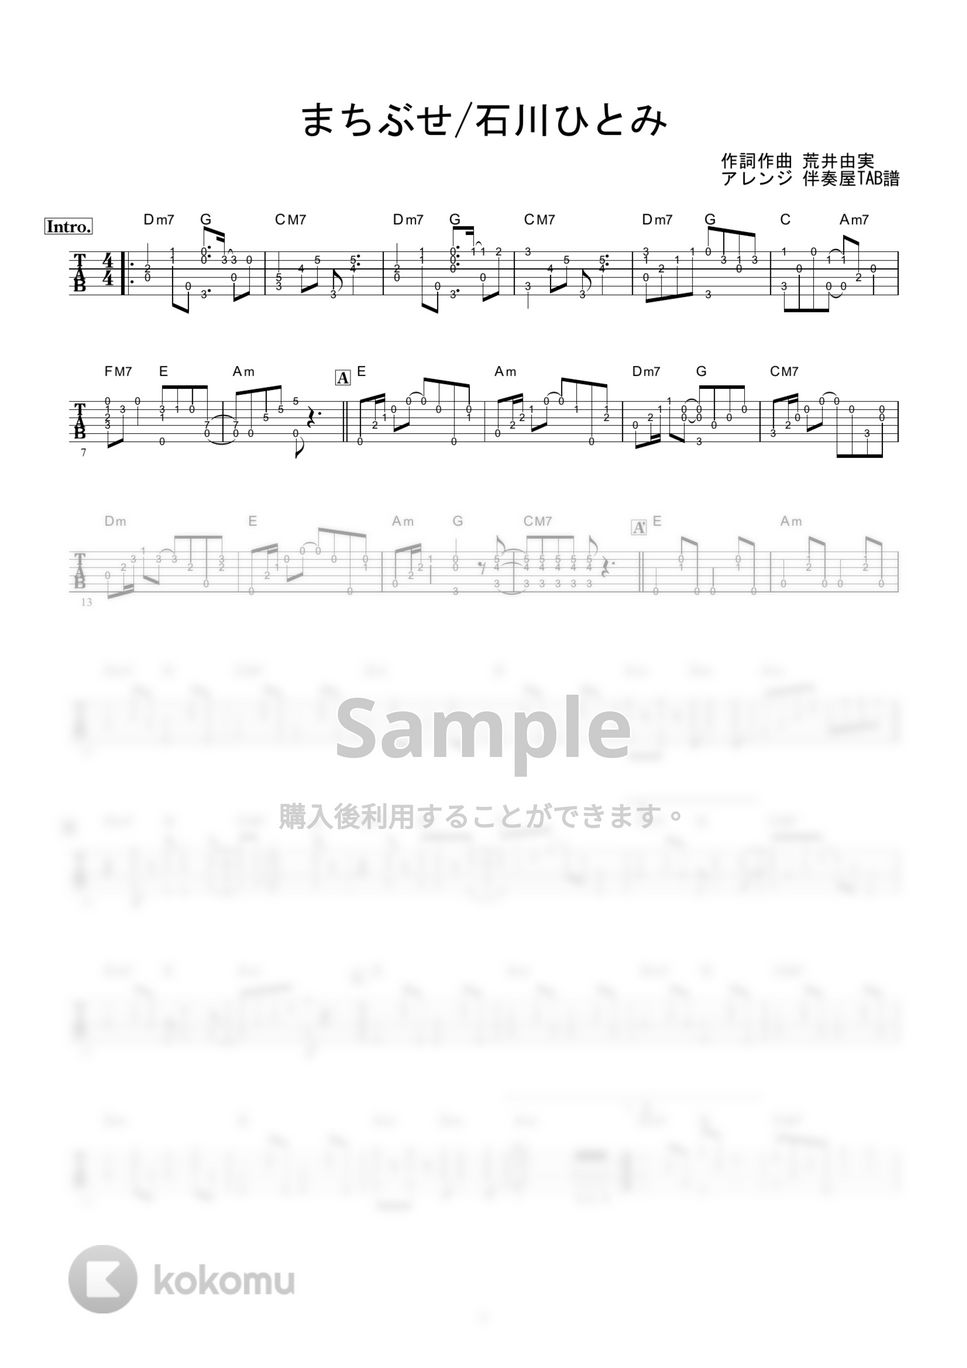 石川ひとみ - まちぶせ (ギター伴奏/イントロ・間奏ソロギター) by 伴奏屋TAB譜